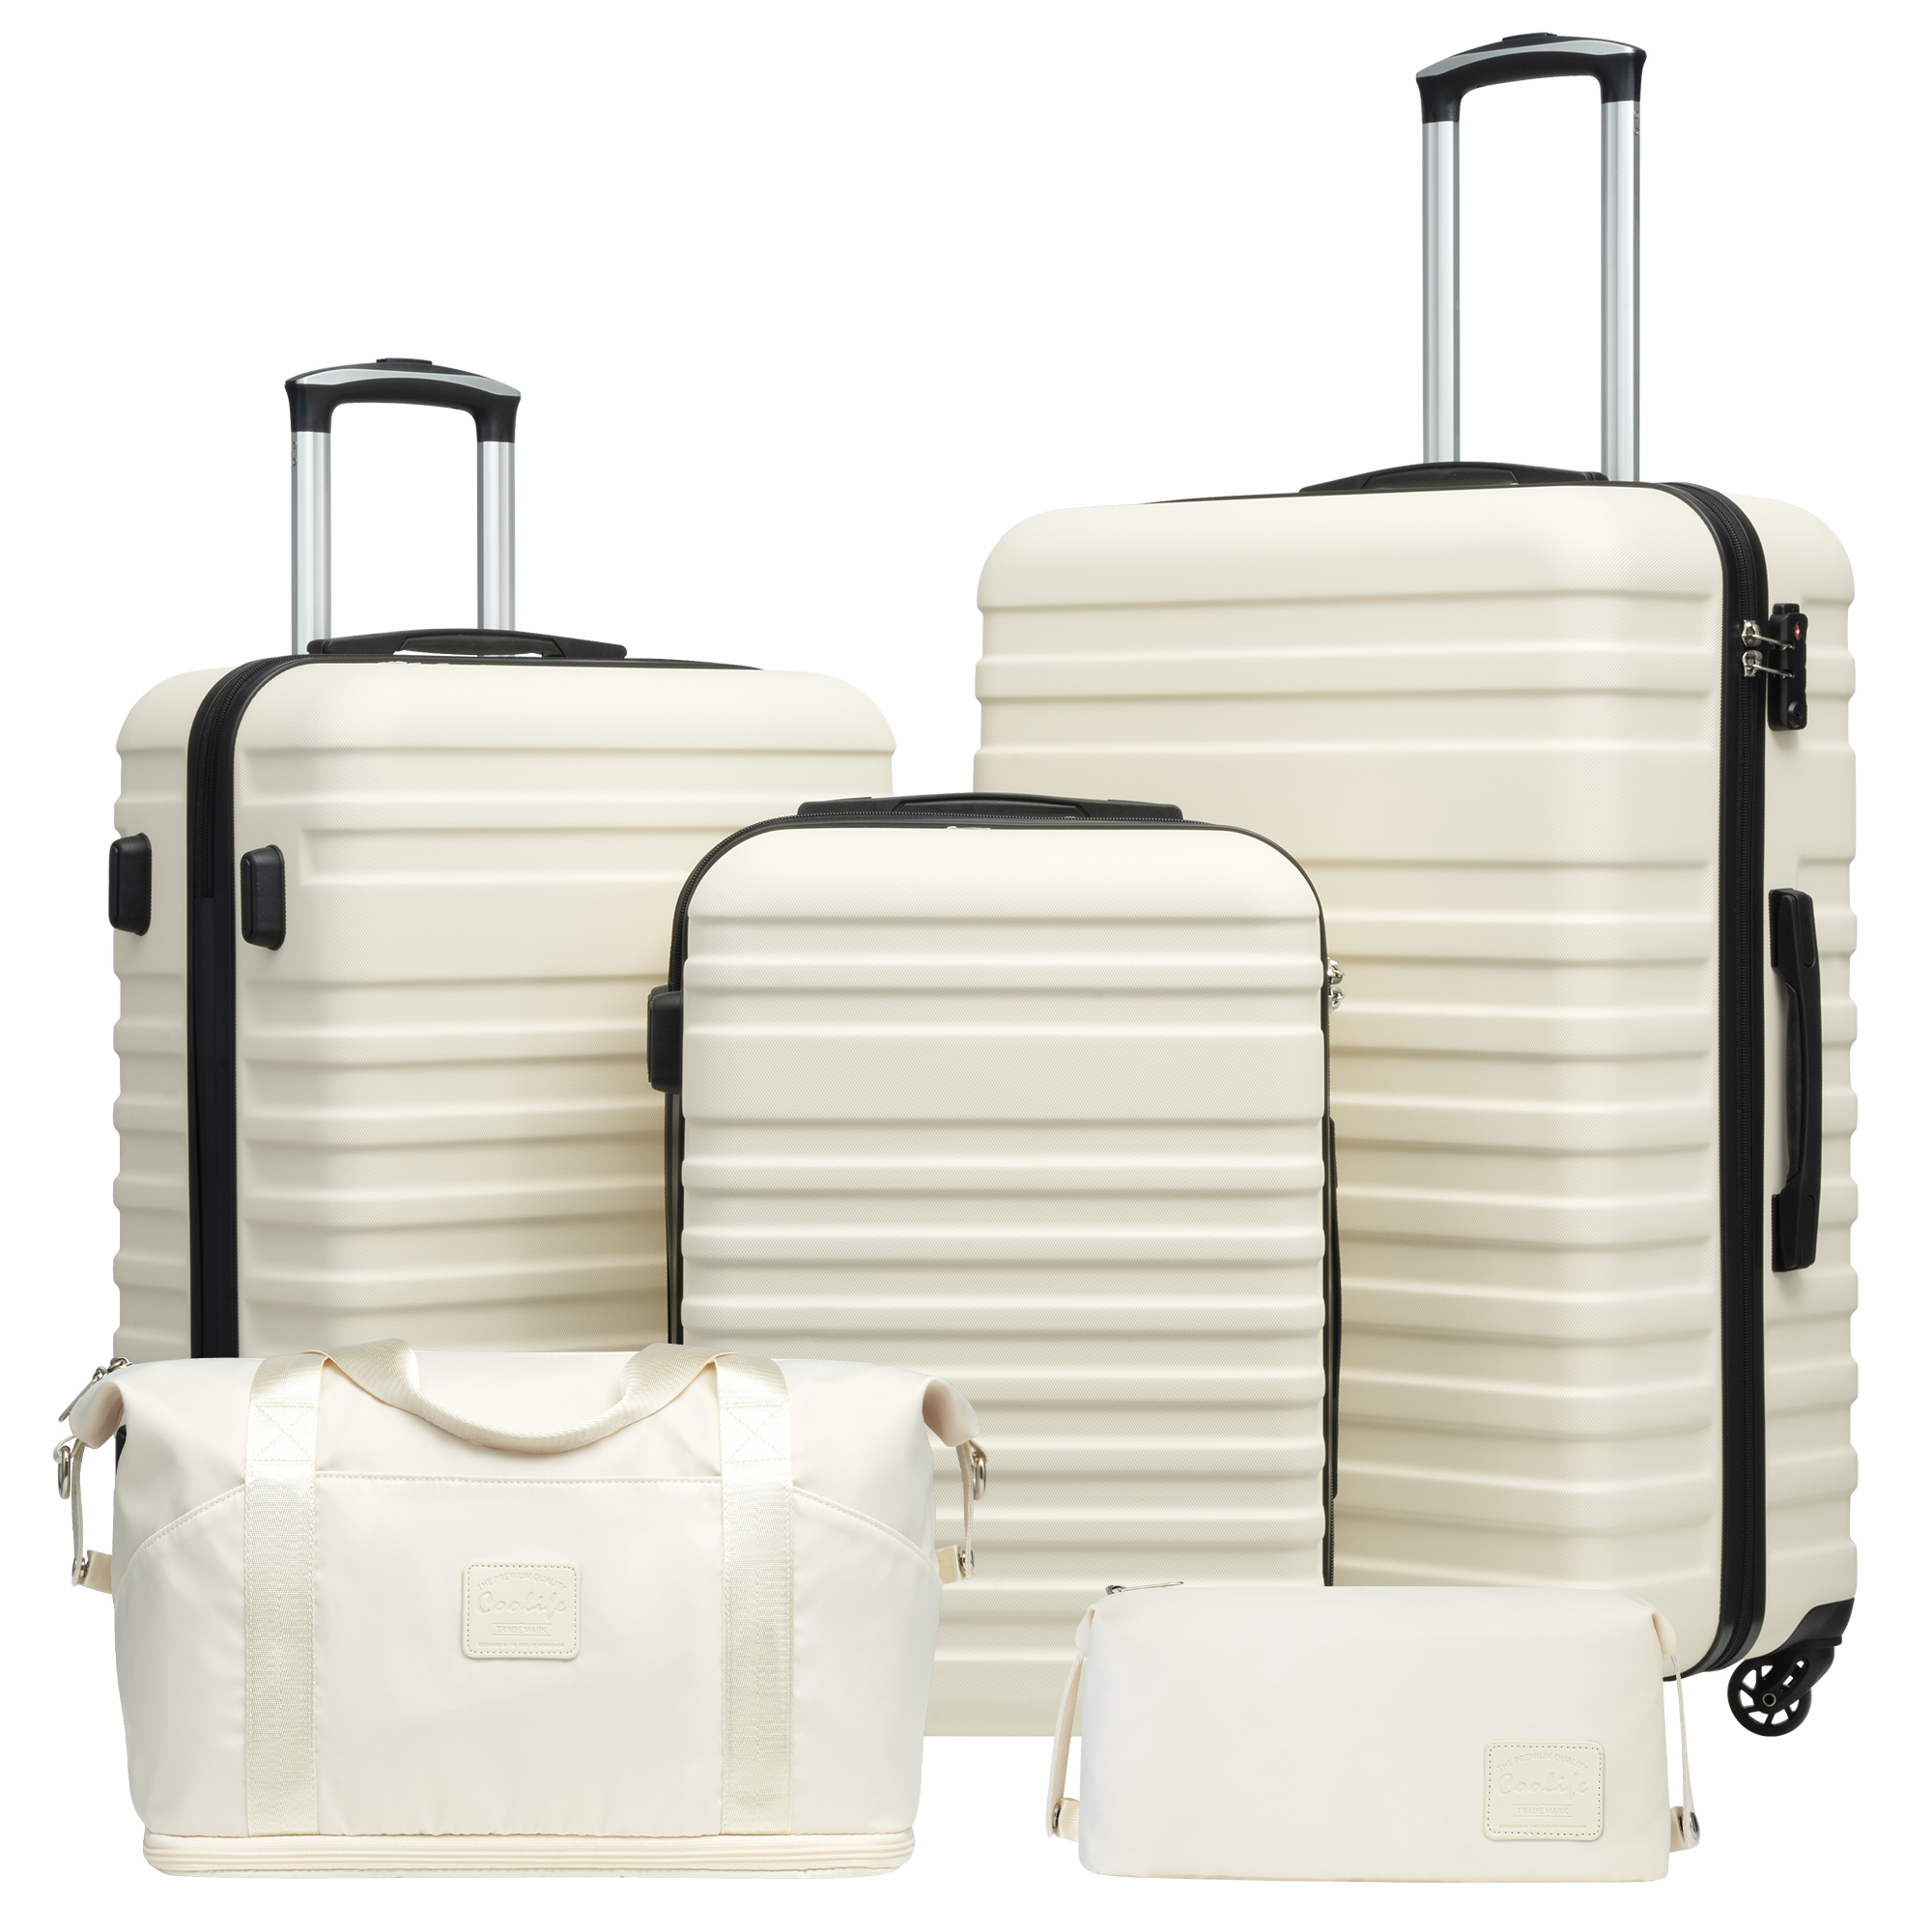 Coolife Luggage Sets Suitcase Set Carry On Hardside Luggage with TSA Lock Spinner Wheels